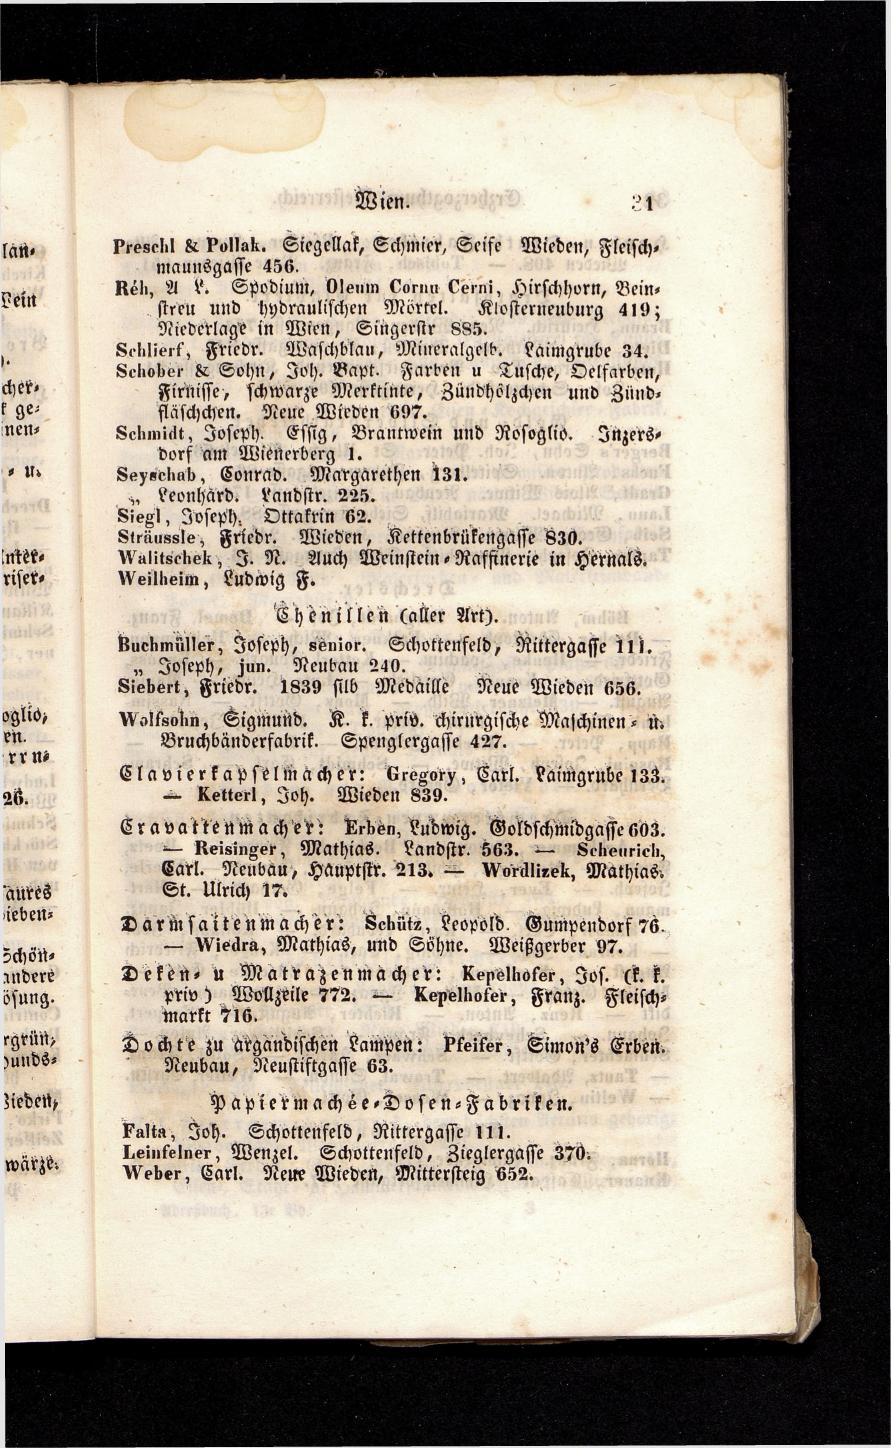 Grosses Adressbuch der Kaufleute. No. 13. Oesterreich ober u. unter der Enns 1844 - Seite 35